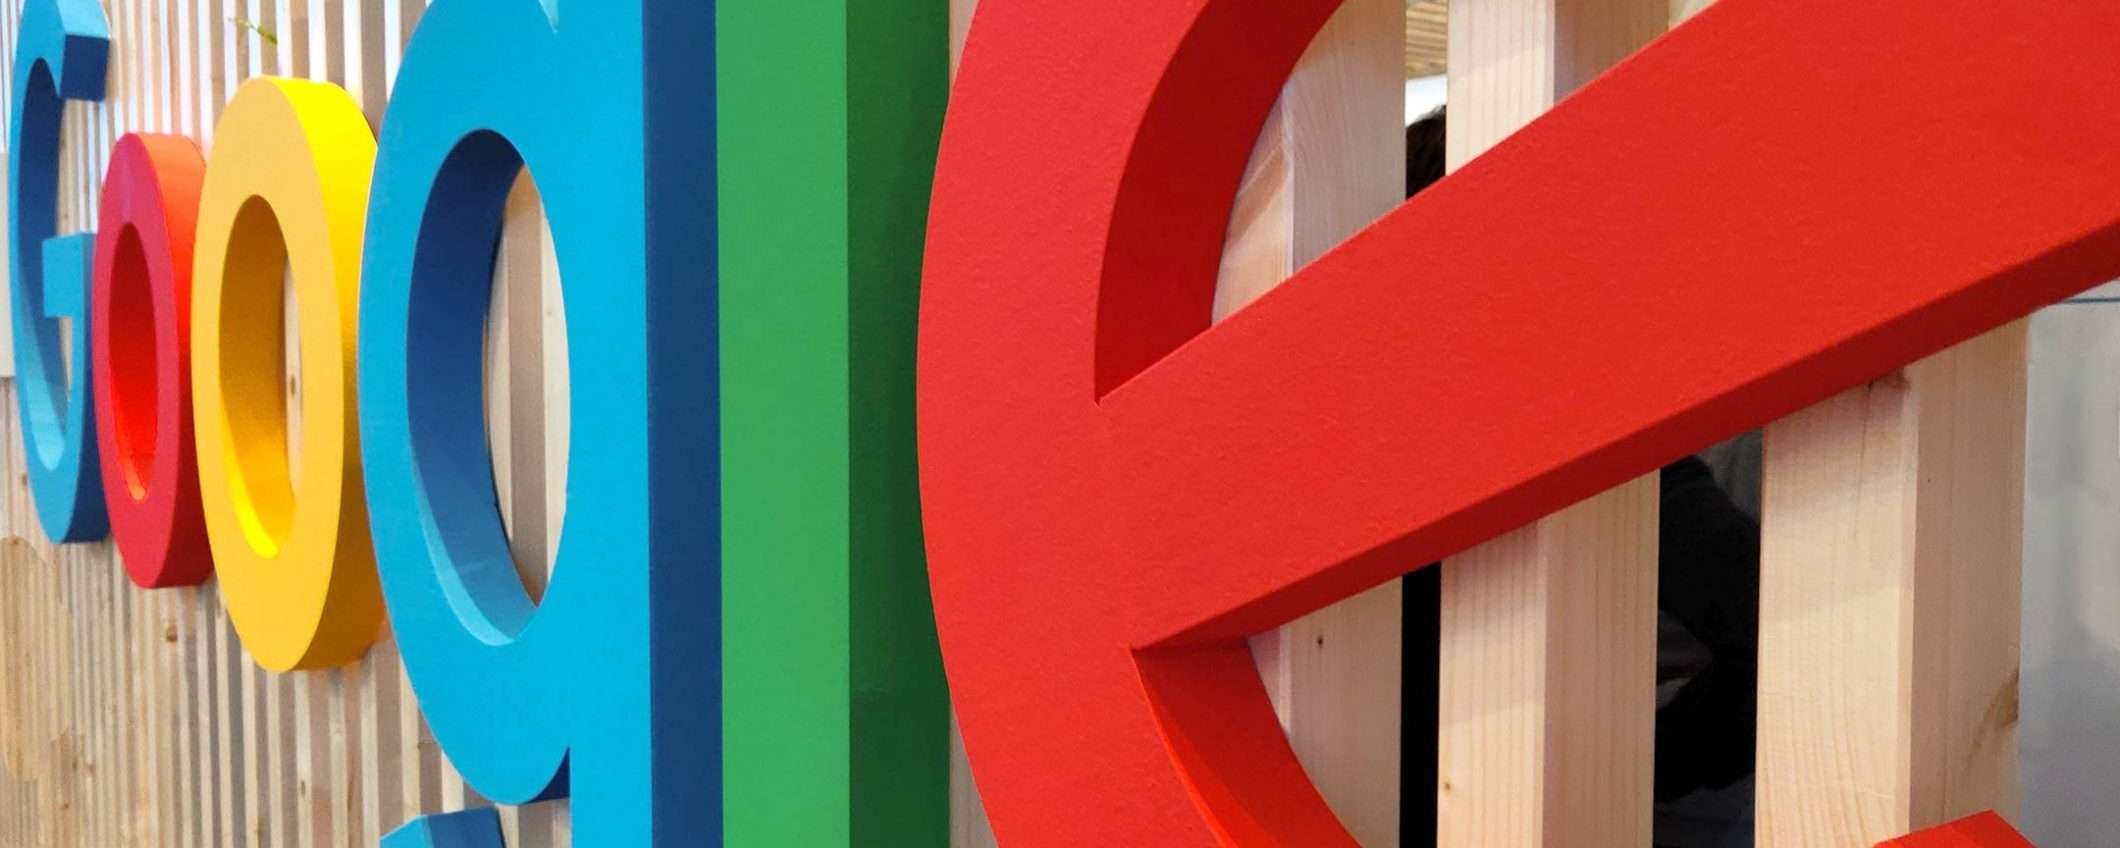 Google tende la mano al mondo dell'advertising